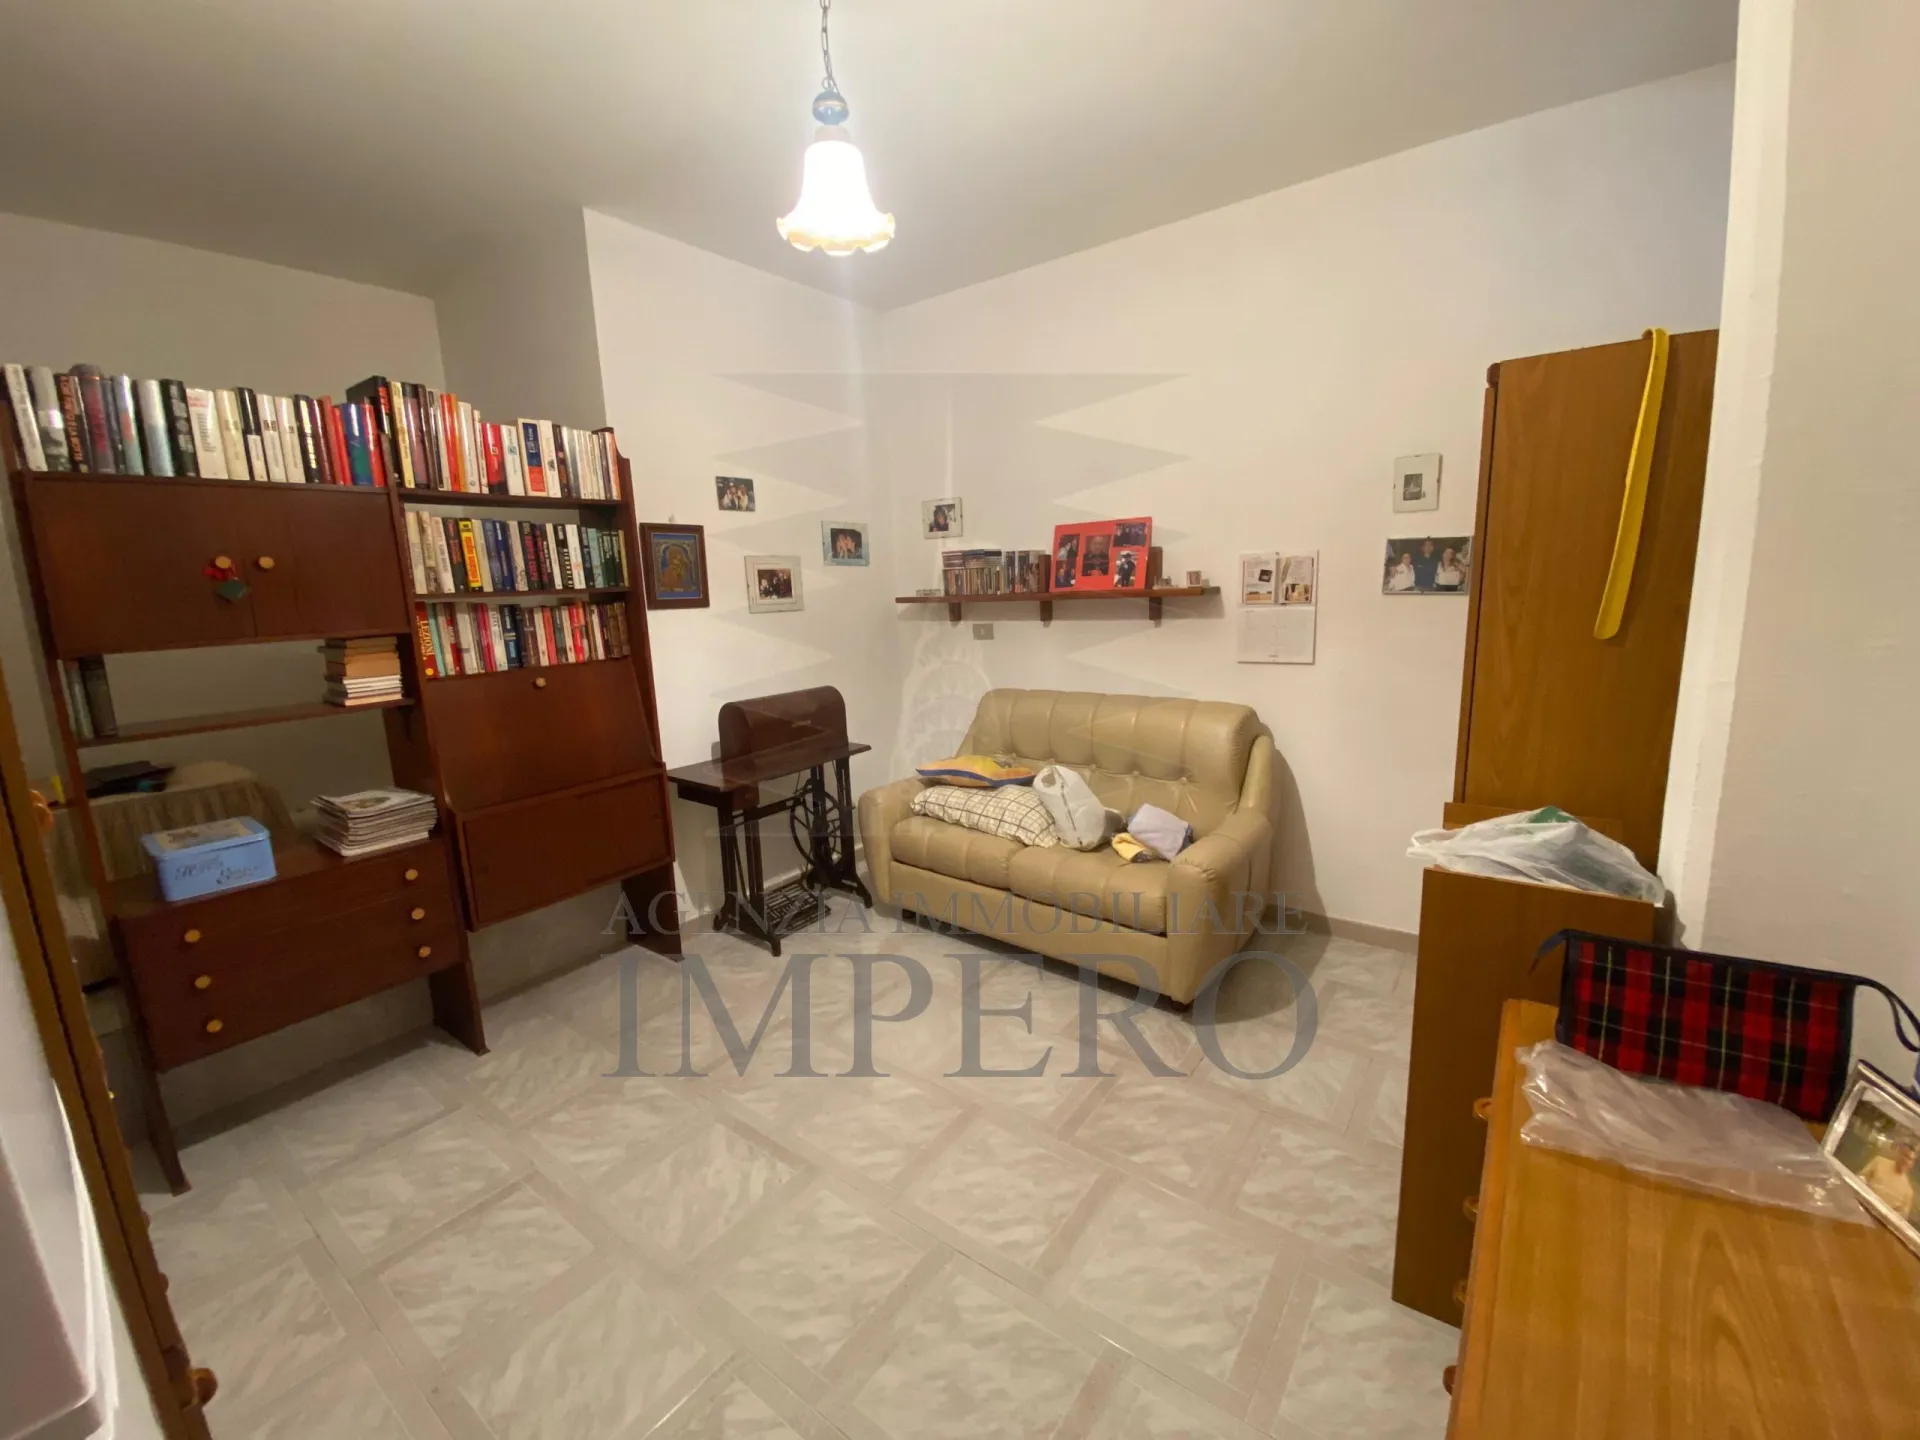 Immagine per Porzione di casa in vendita a Ventimiglia via Vicari